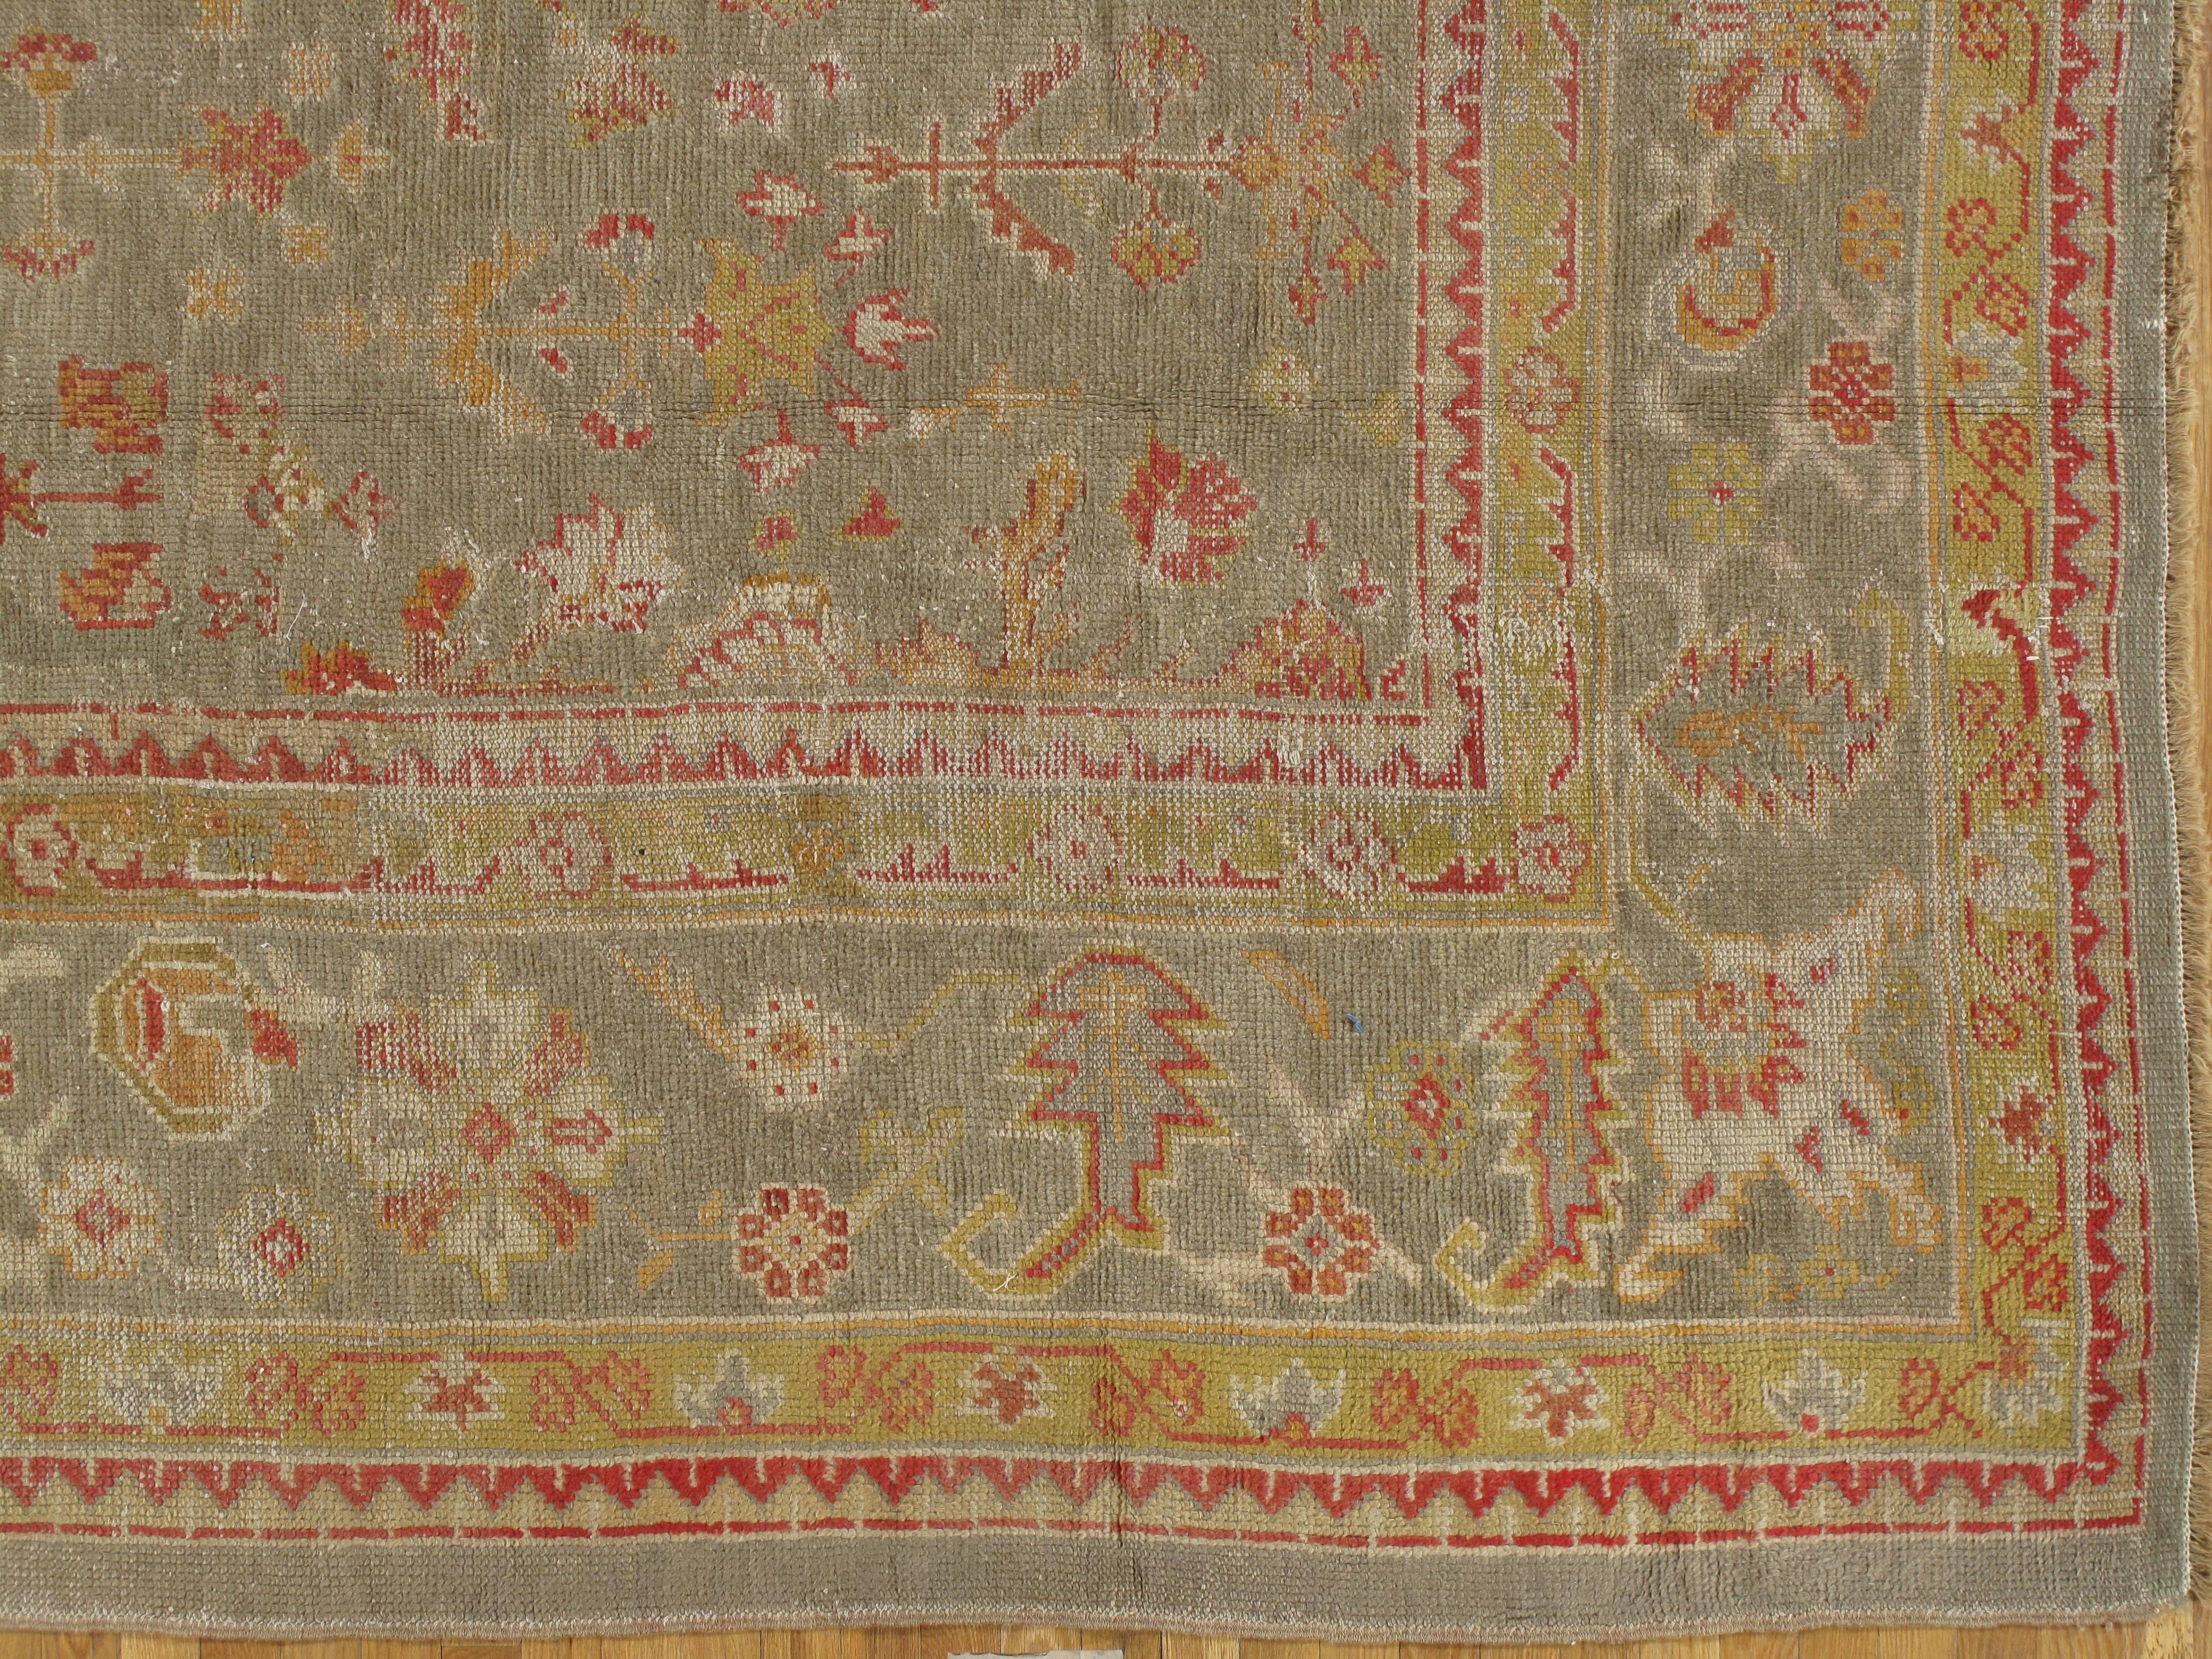 Persian Antique Turkish Oushak Carpet, Handmade Wool Oriental Rug, Green Rug